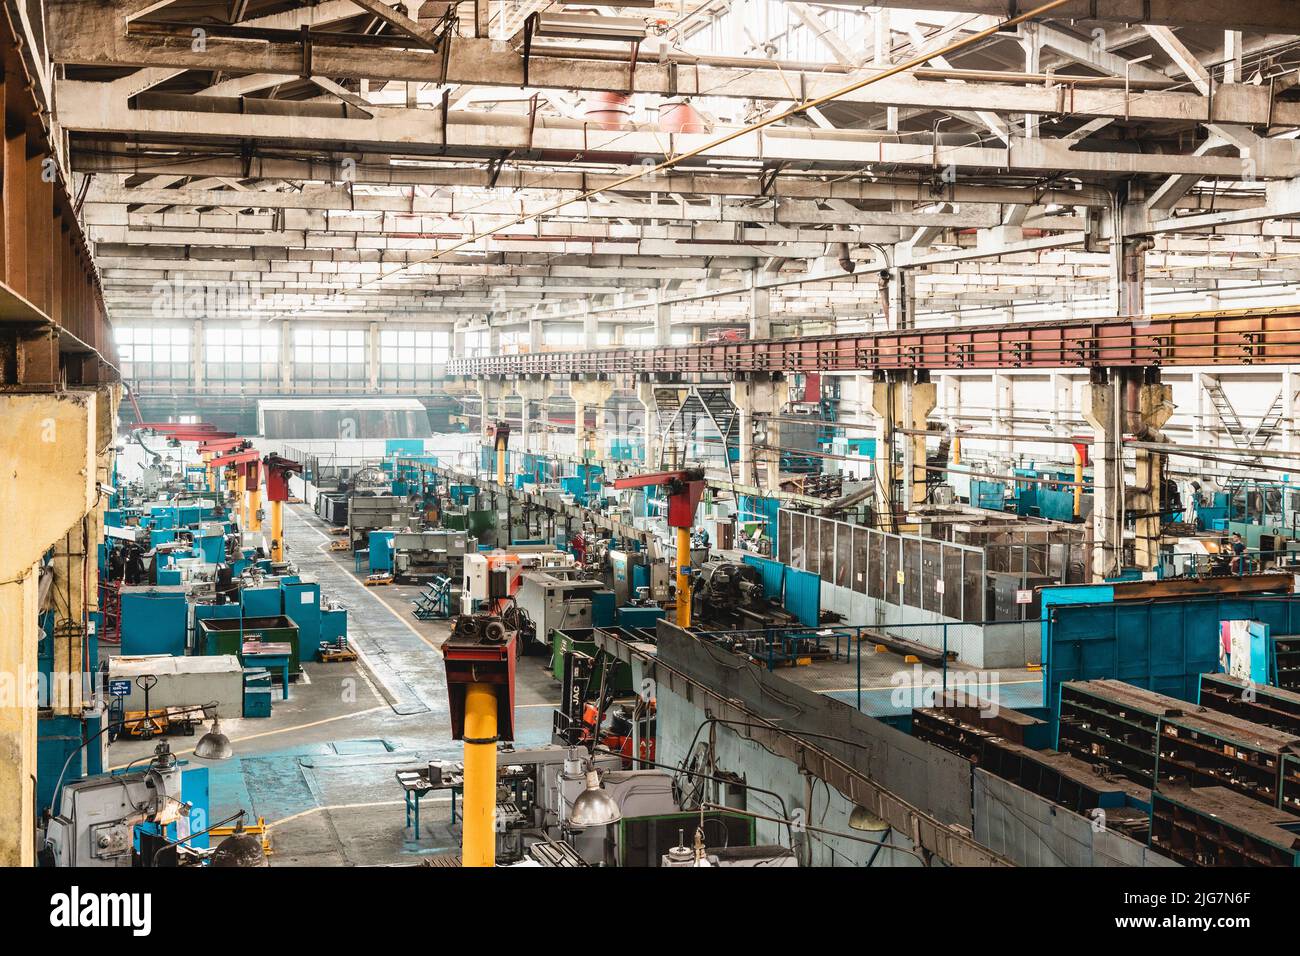 Ufa, Russland. 9. Oktober 2021: Das Innere einer alten Produktionsstätte. Großer Hangar in einer Fabrik mit vielen speziellen Maschinen und technologischen Stockfoto